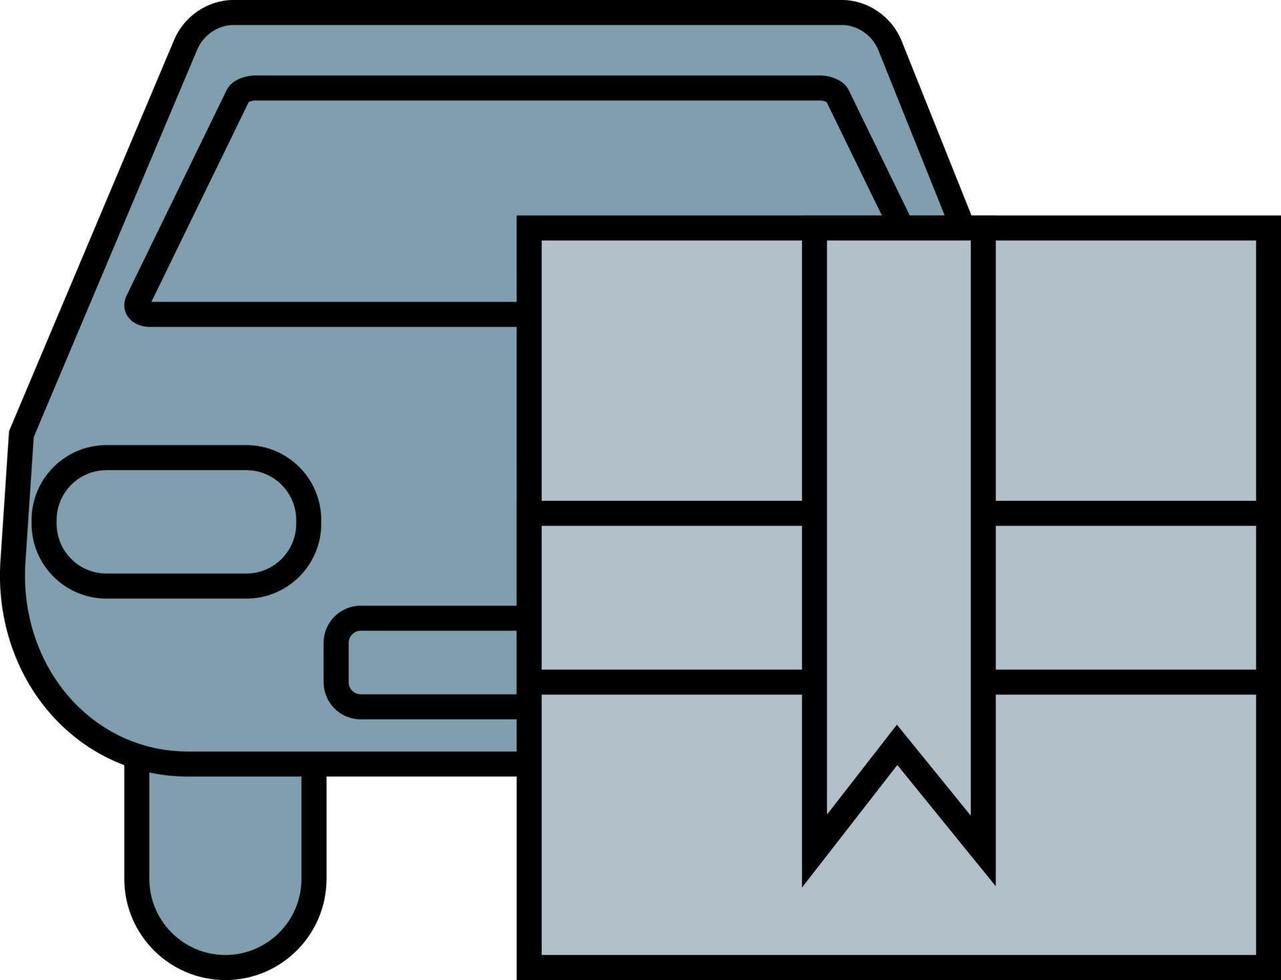 voiture de livraison, illustration, vecteur, sur fond blanc. vecteur